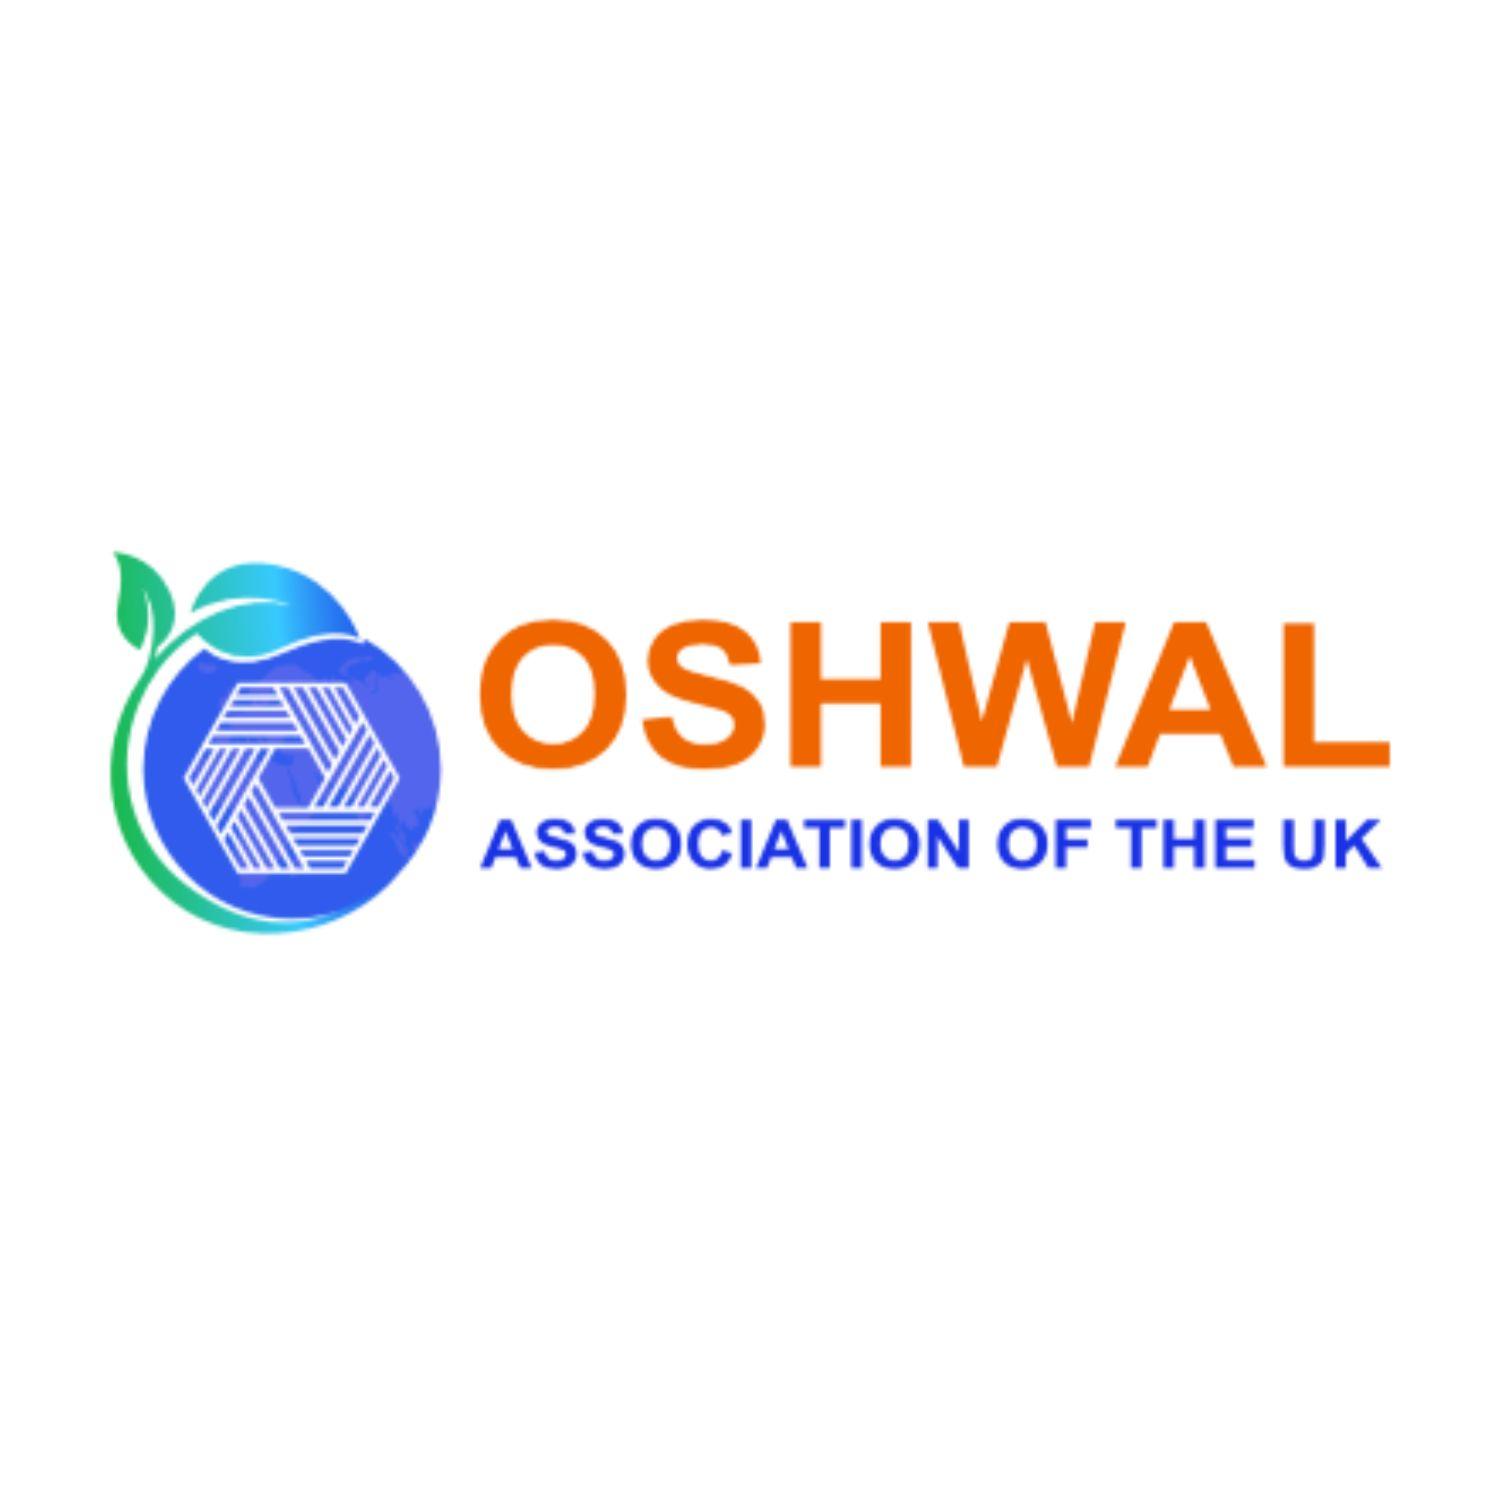 Oshwal